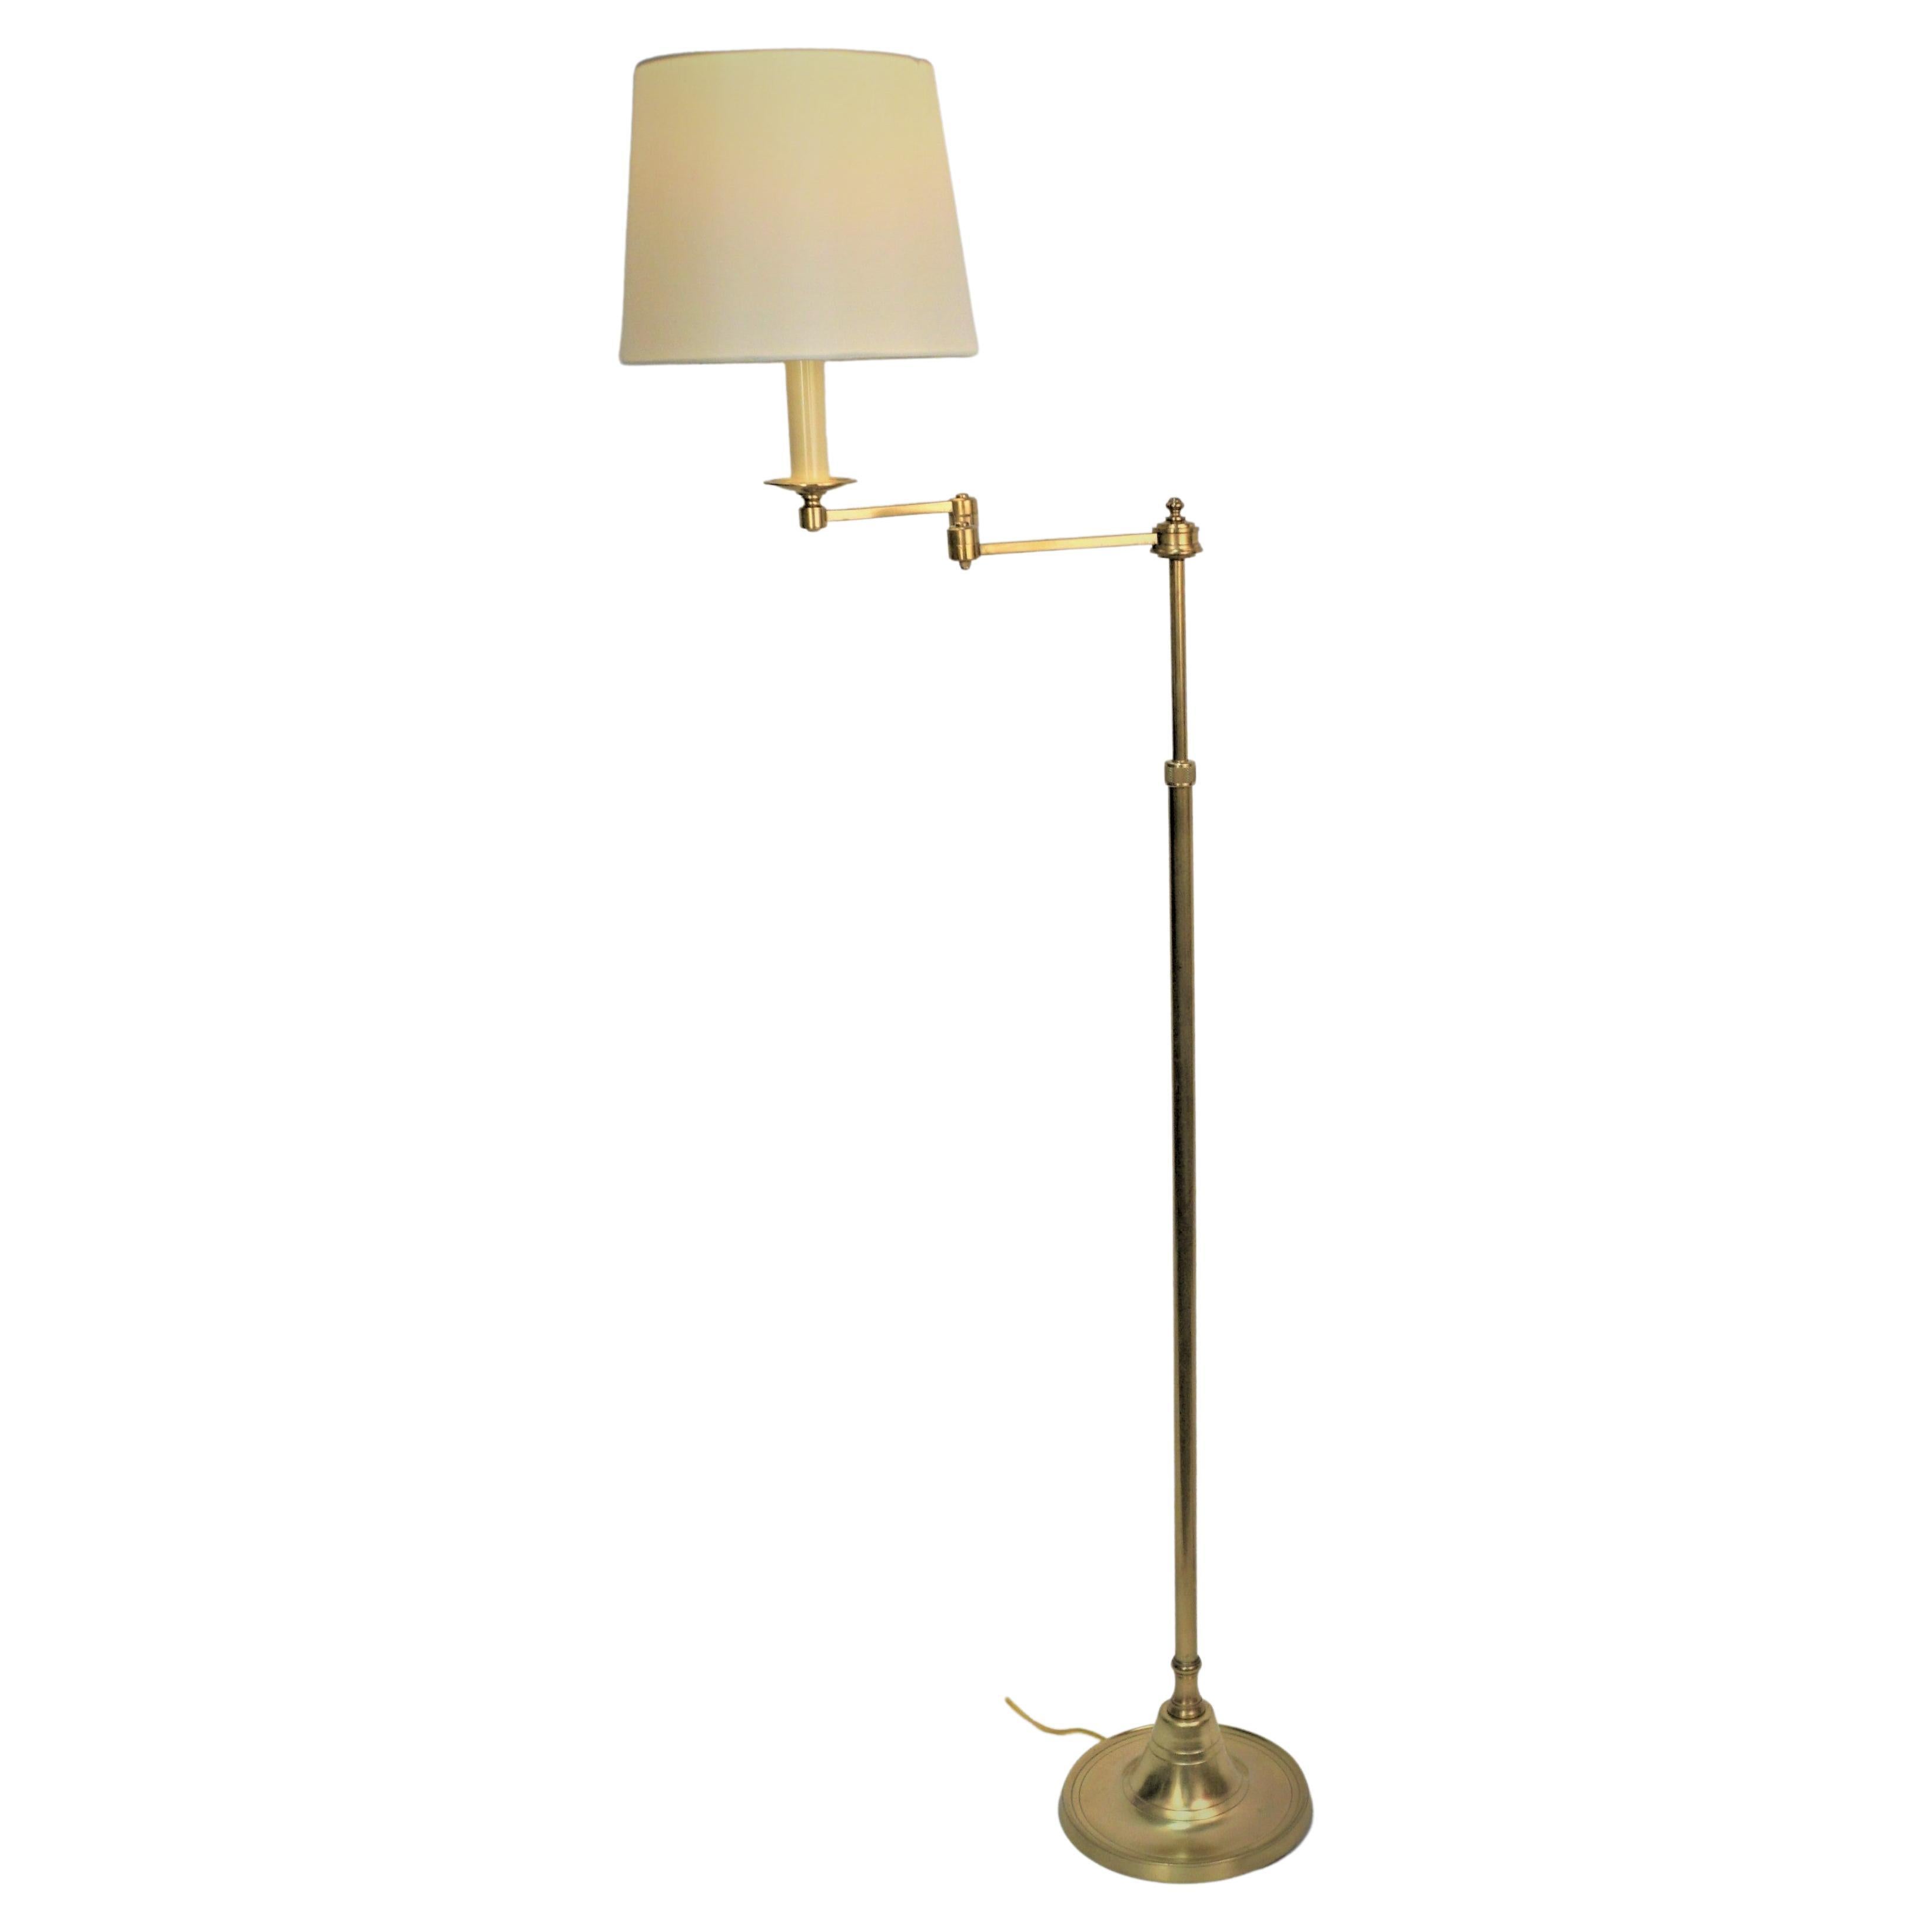 1950's Bronze Swing Arm Adjustable Height Floor Lamp by Bagues